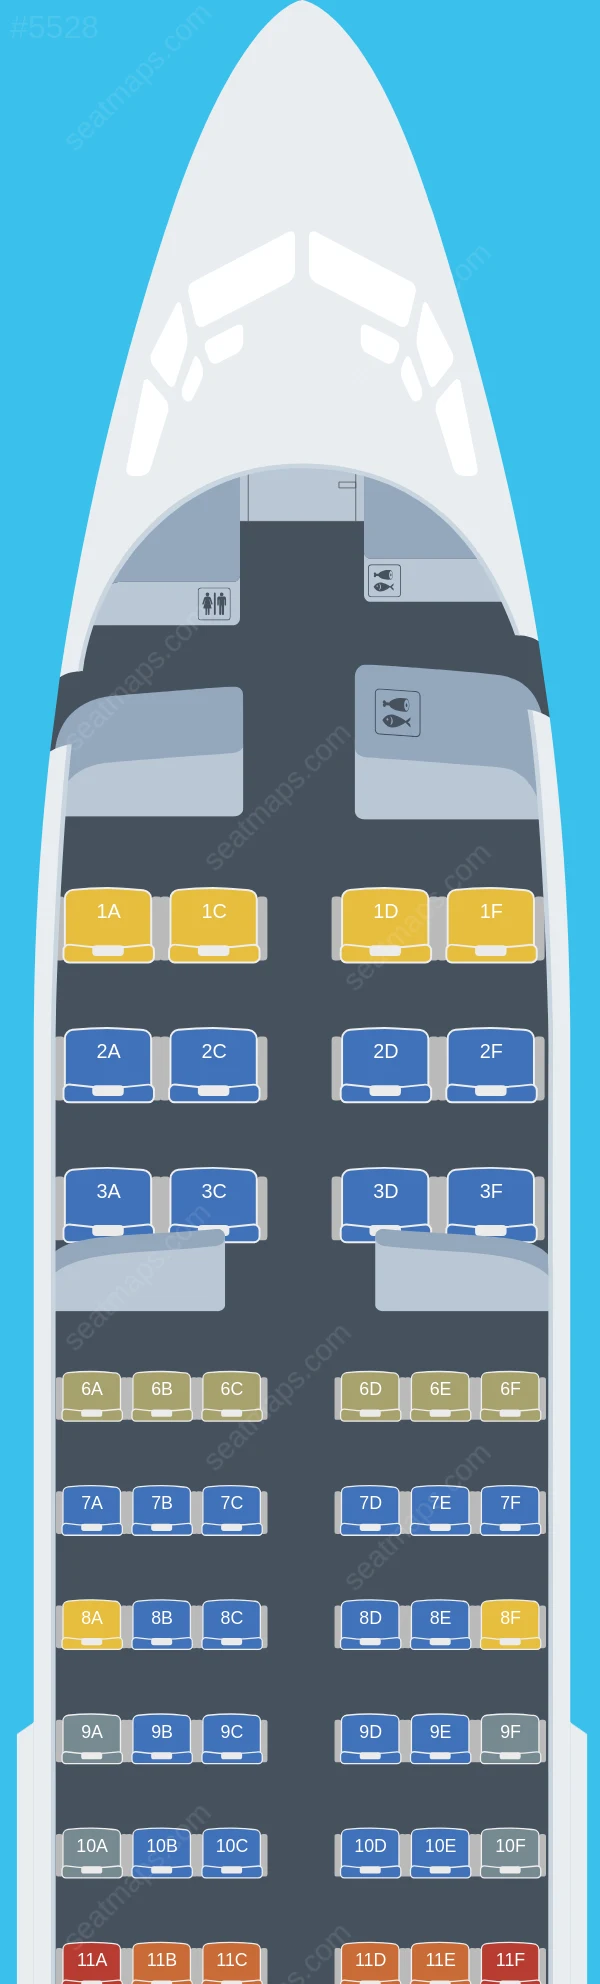 Arik Air Boeing 737-700 V.2 seatmap preview